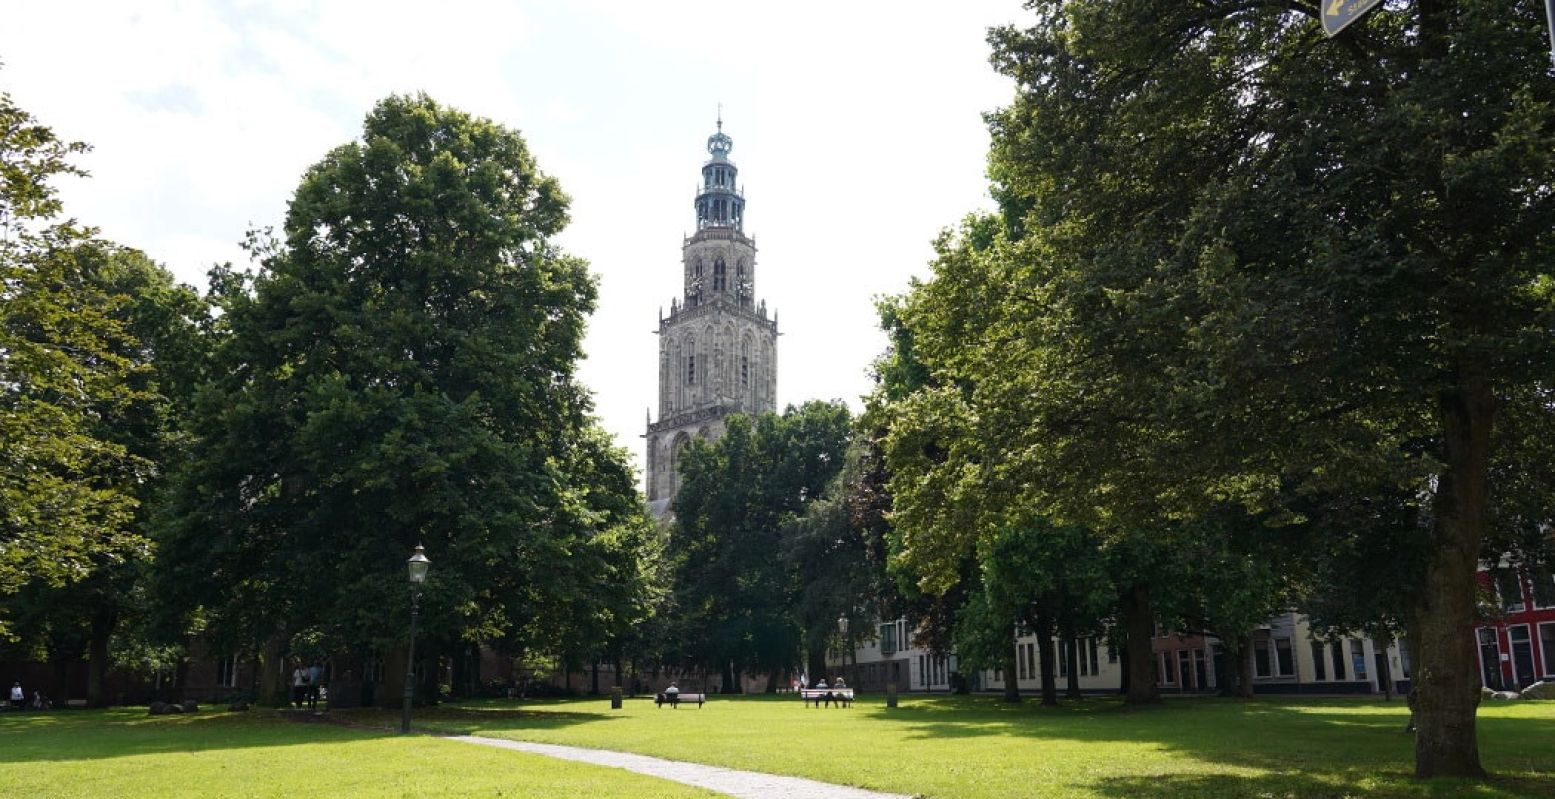 De bekendste bezienswaardigheid van Groningen? De Martinitoren natuurlijk! Foto: André Löwenthal